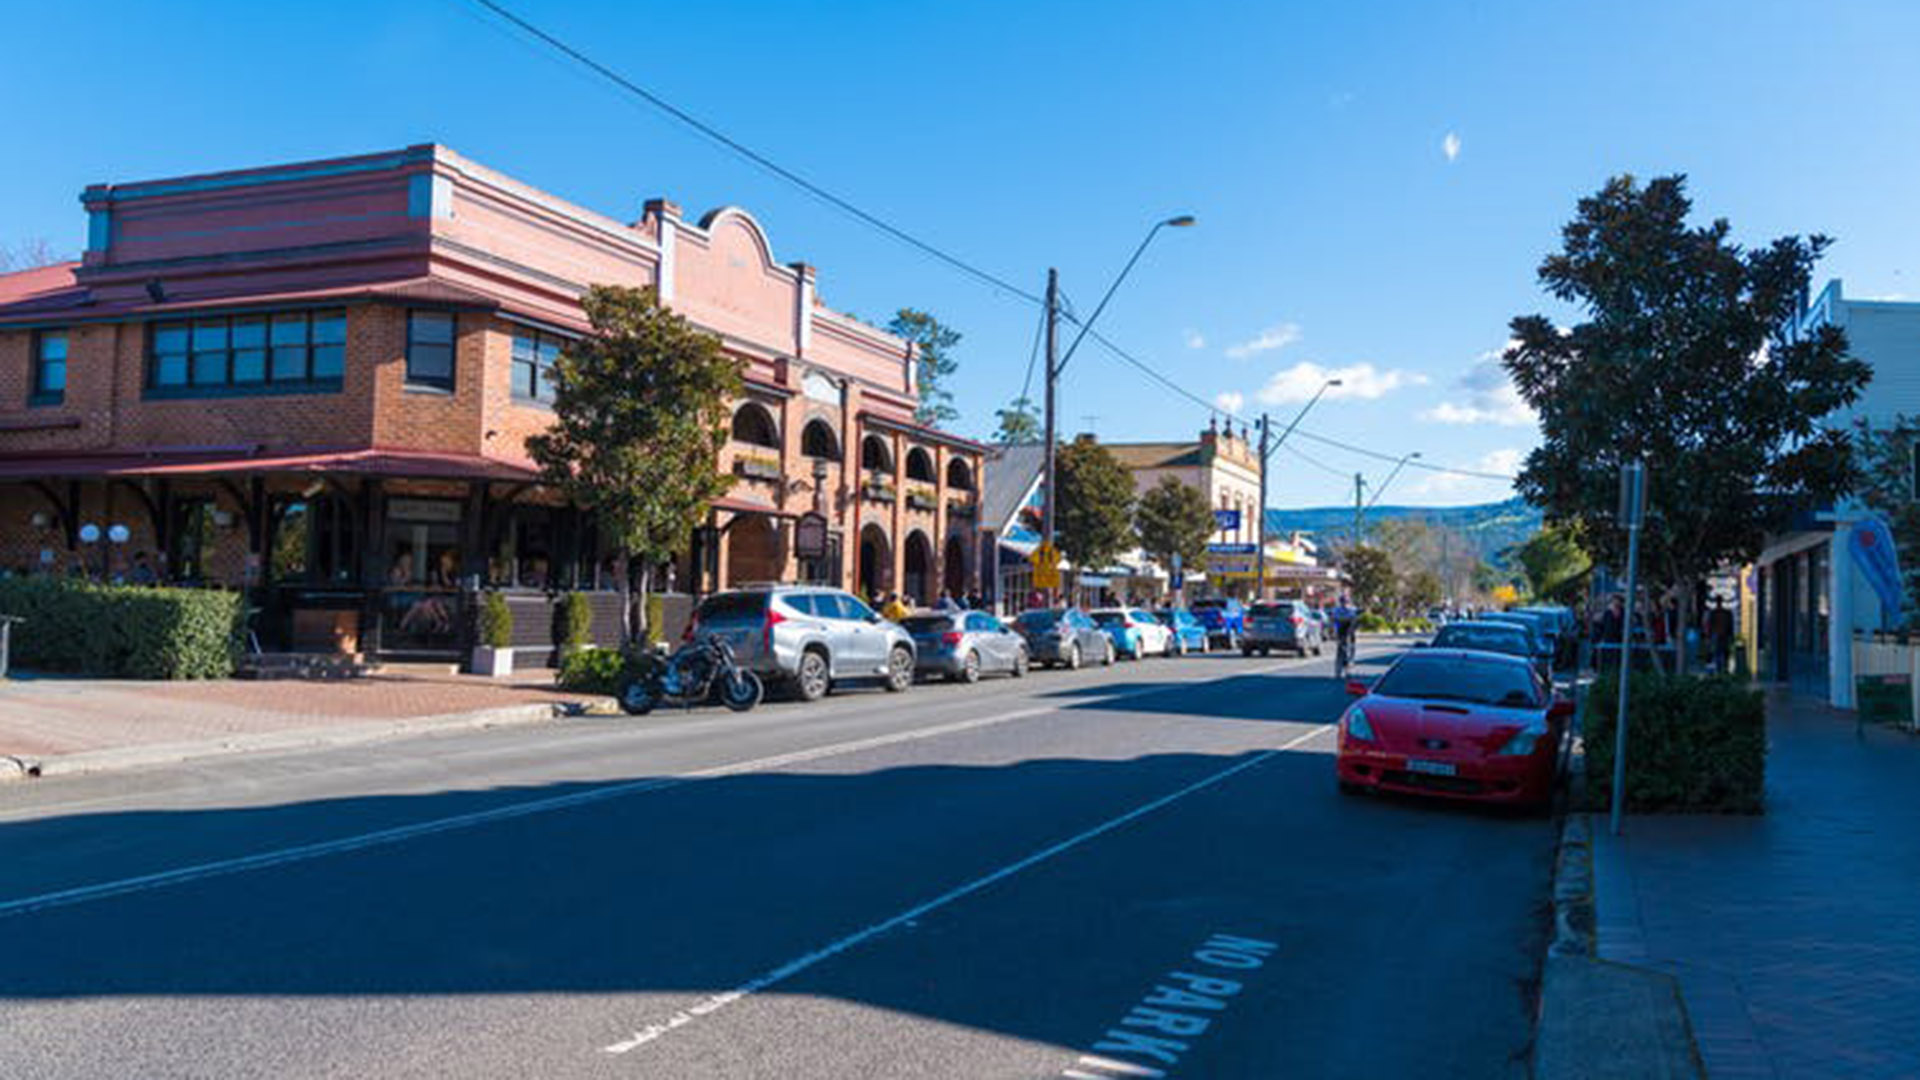 Scene shot of the main street of Berry, NSW